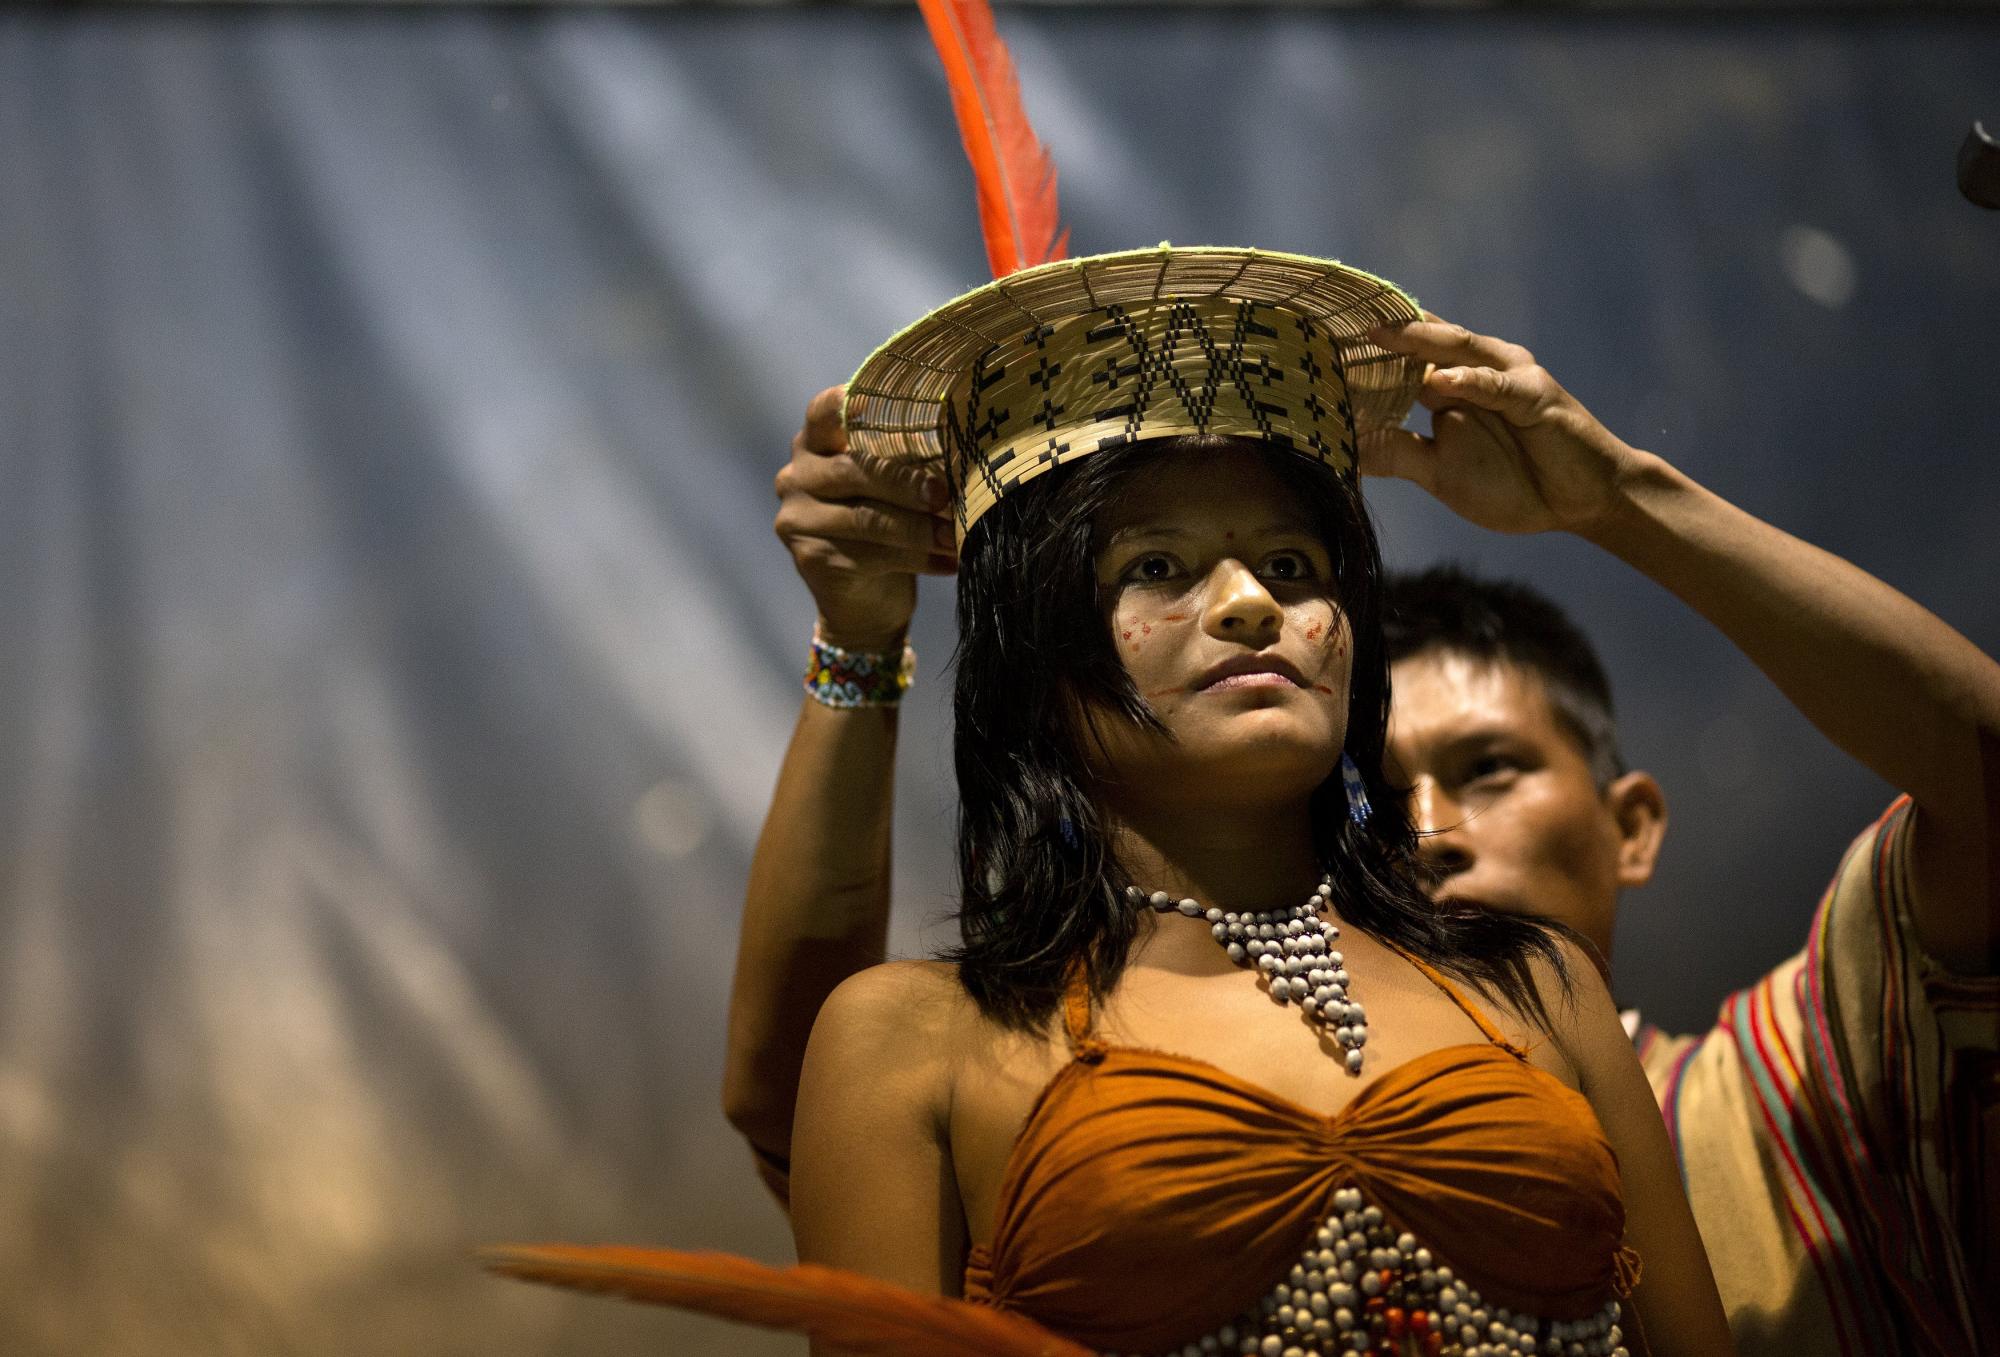 Nativos asháninka celebran concurso femenino de belleza 